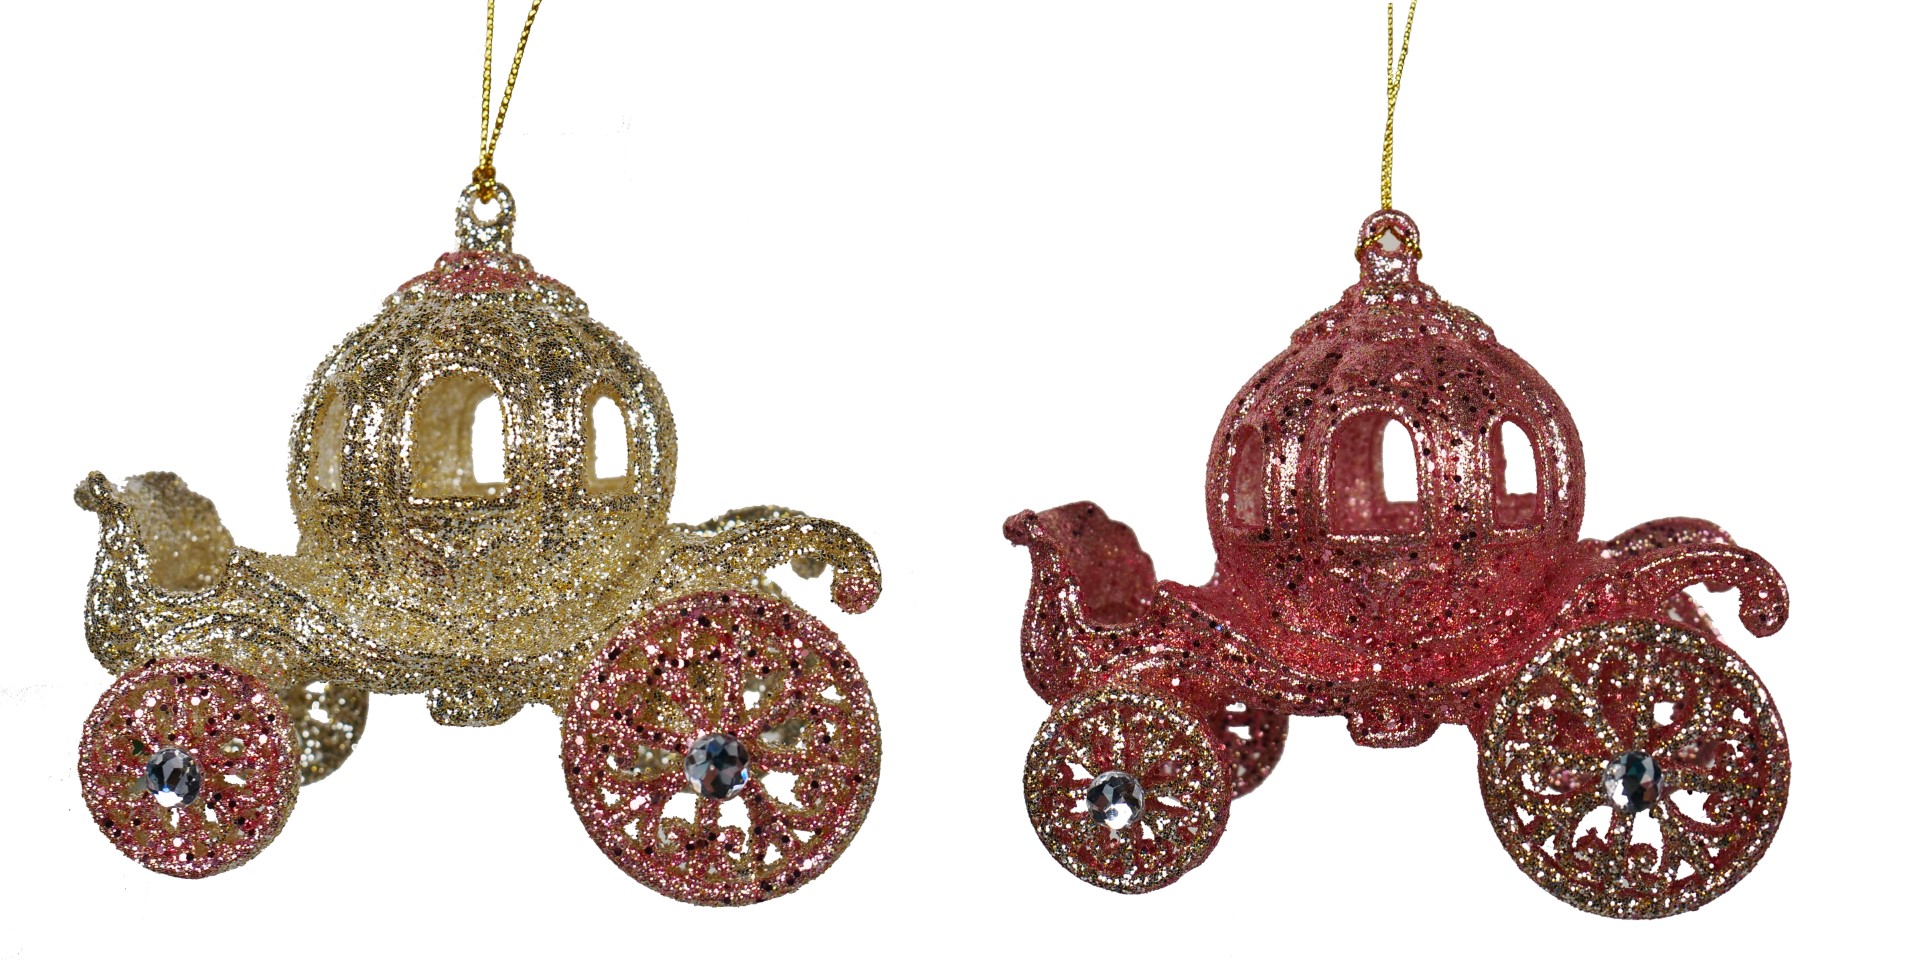 Ornament plastic koets goud roze l12cm - Kurt S. Adler